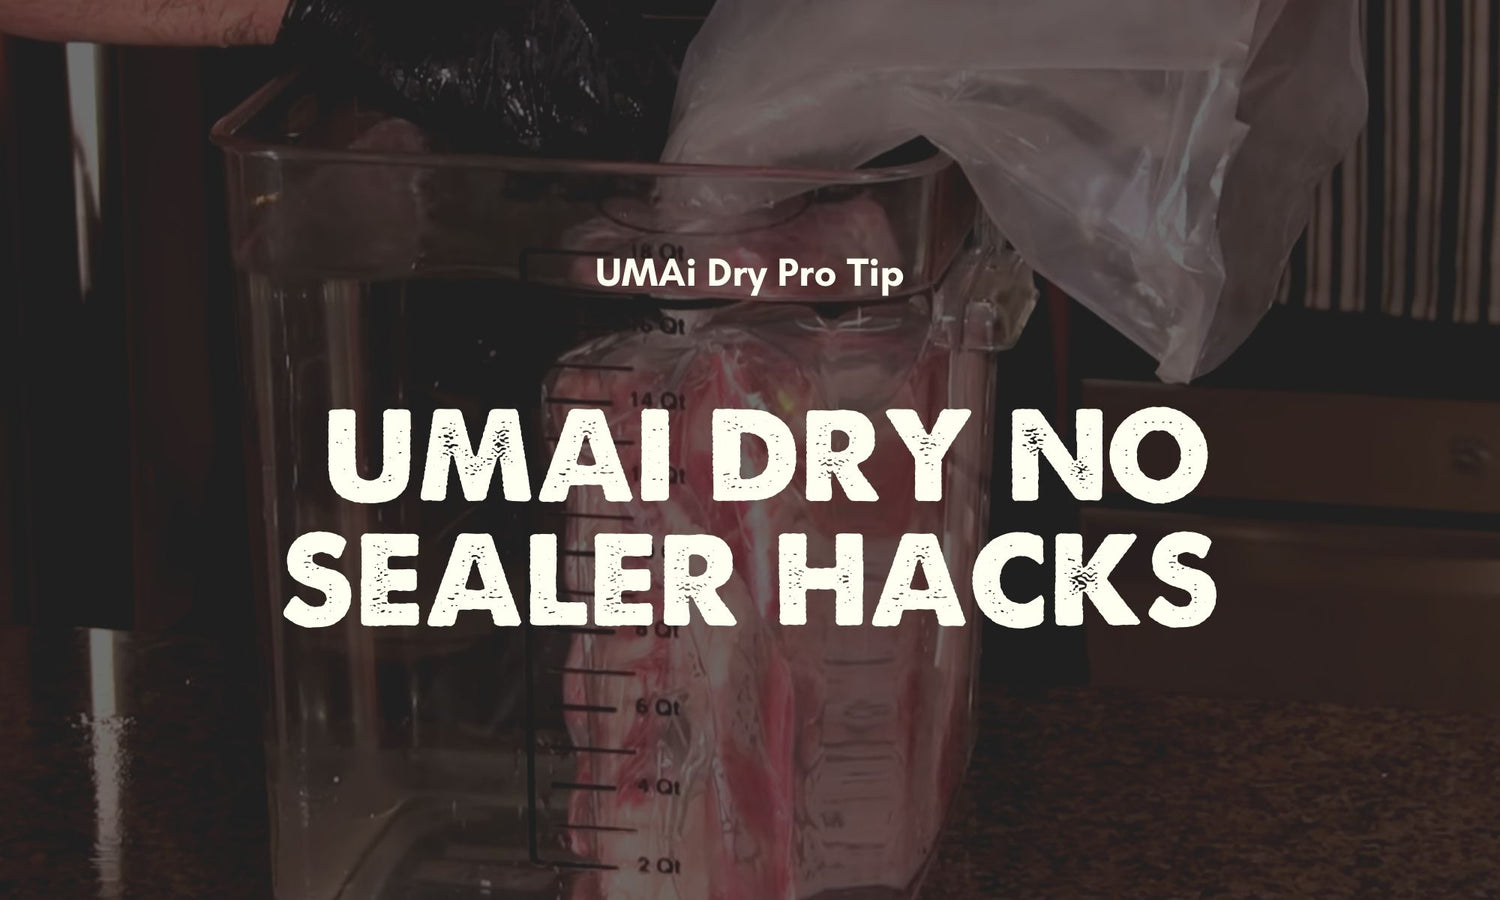 UMAi Dry no vacuum sealer immersion